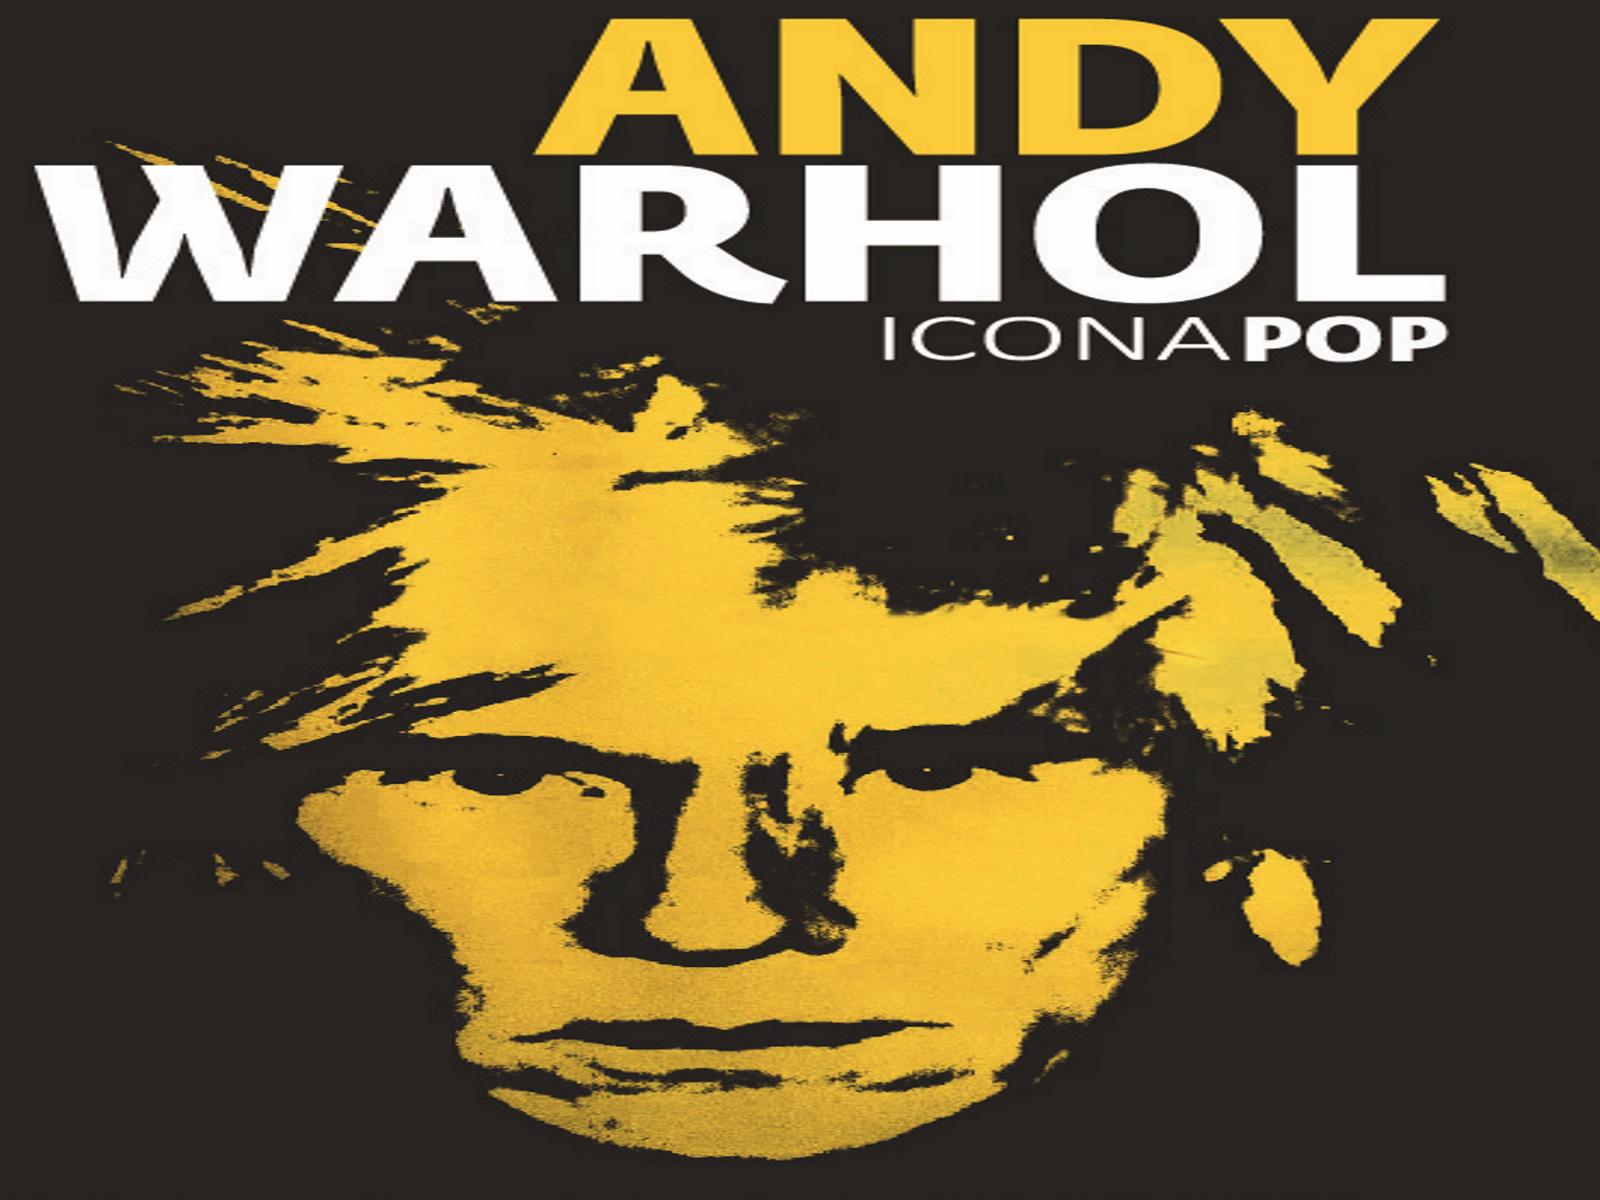 ANDY WARHOL. Icona pop